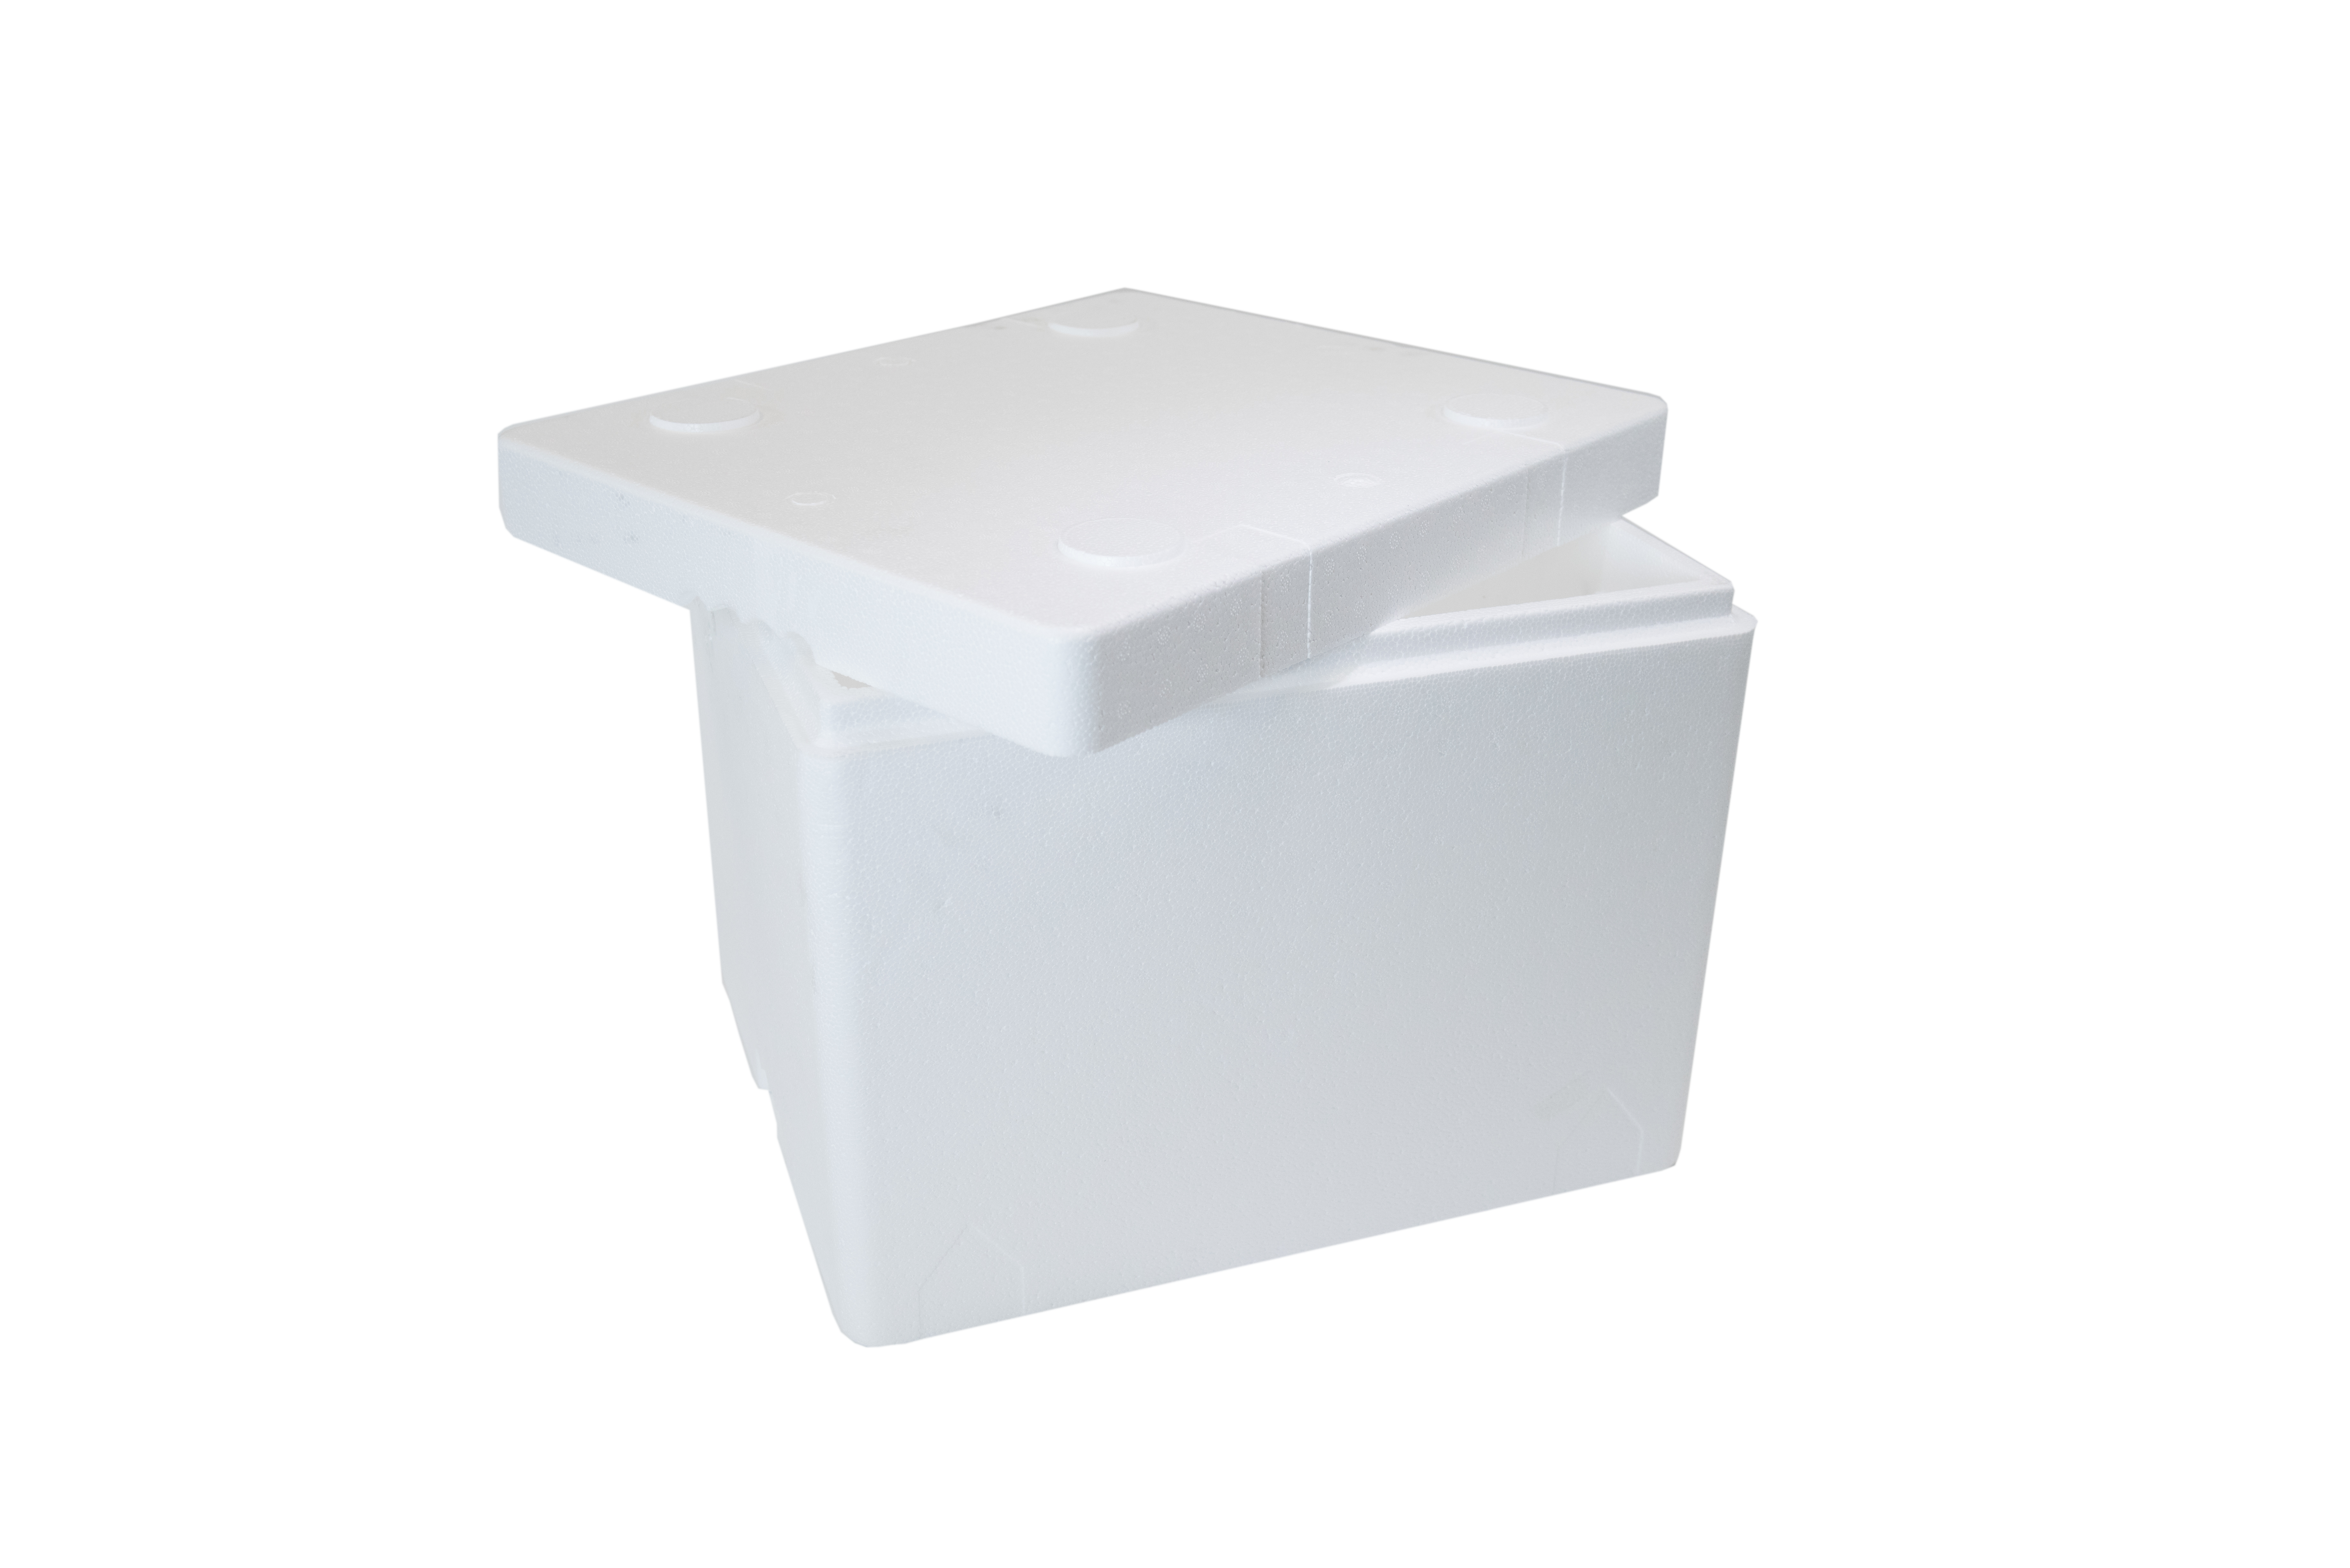 New Styrofoam Cooler